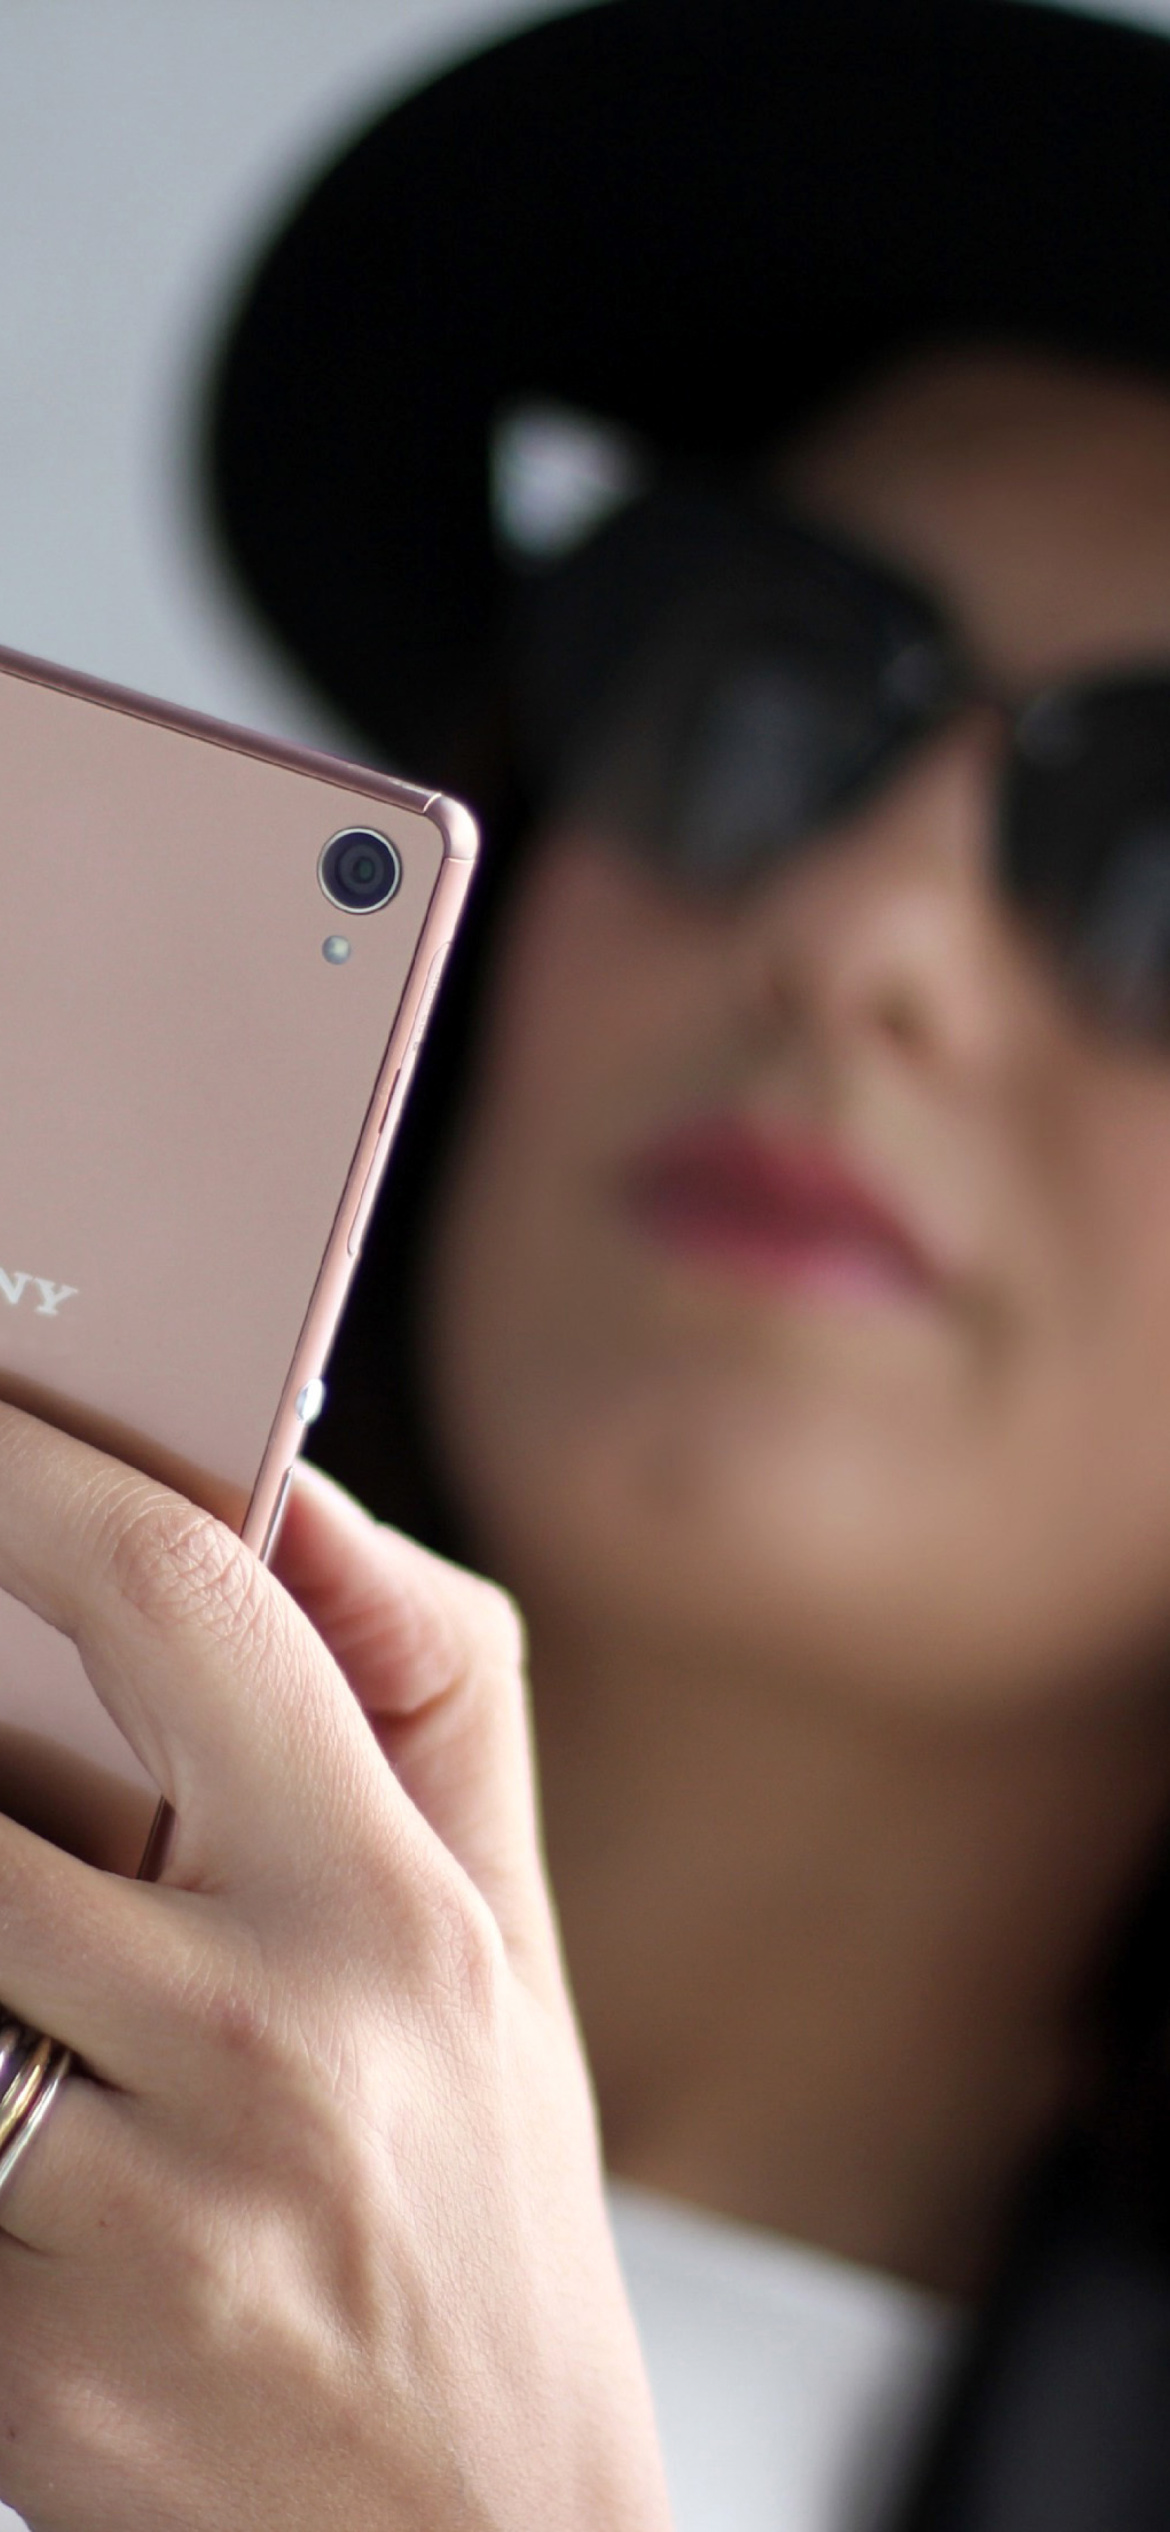 Sony Xperia Z3 Selfie screenshot #1 1170x2532